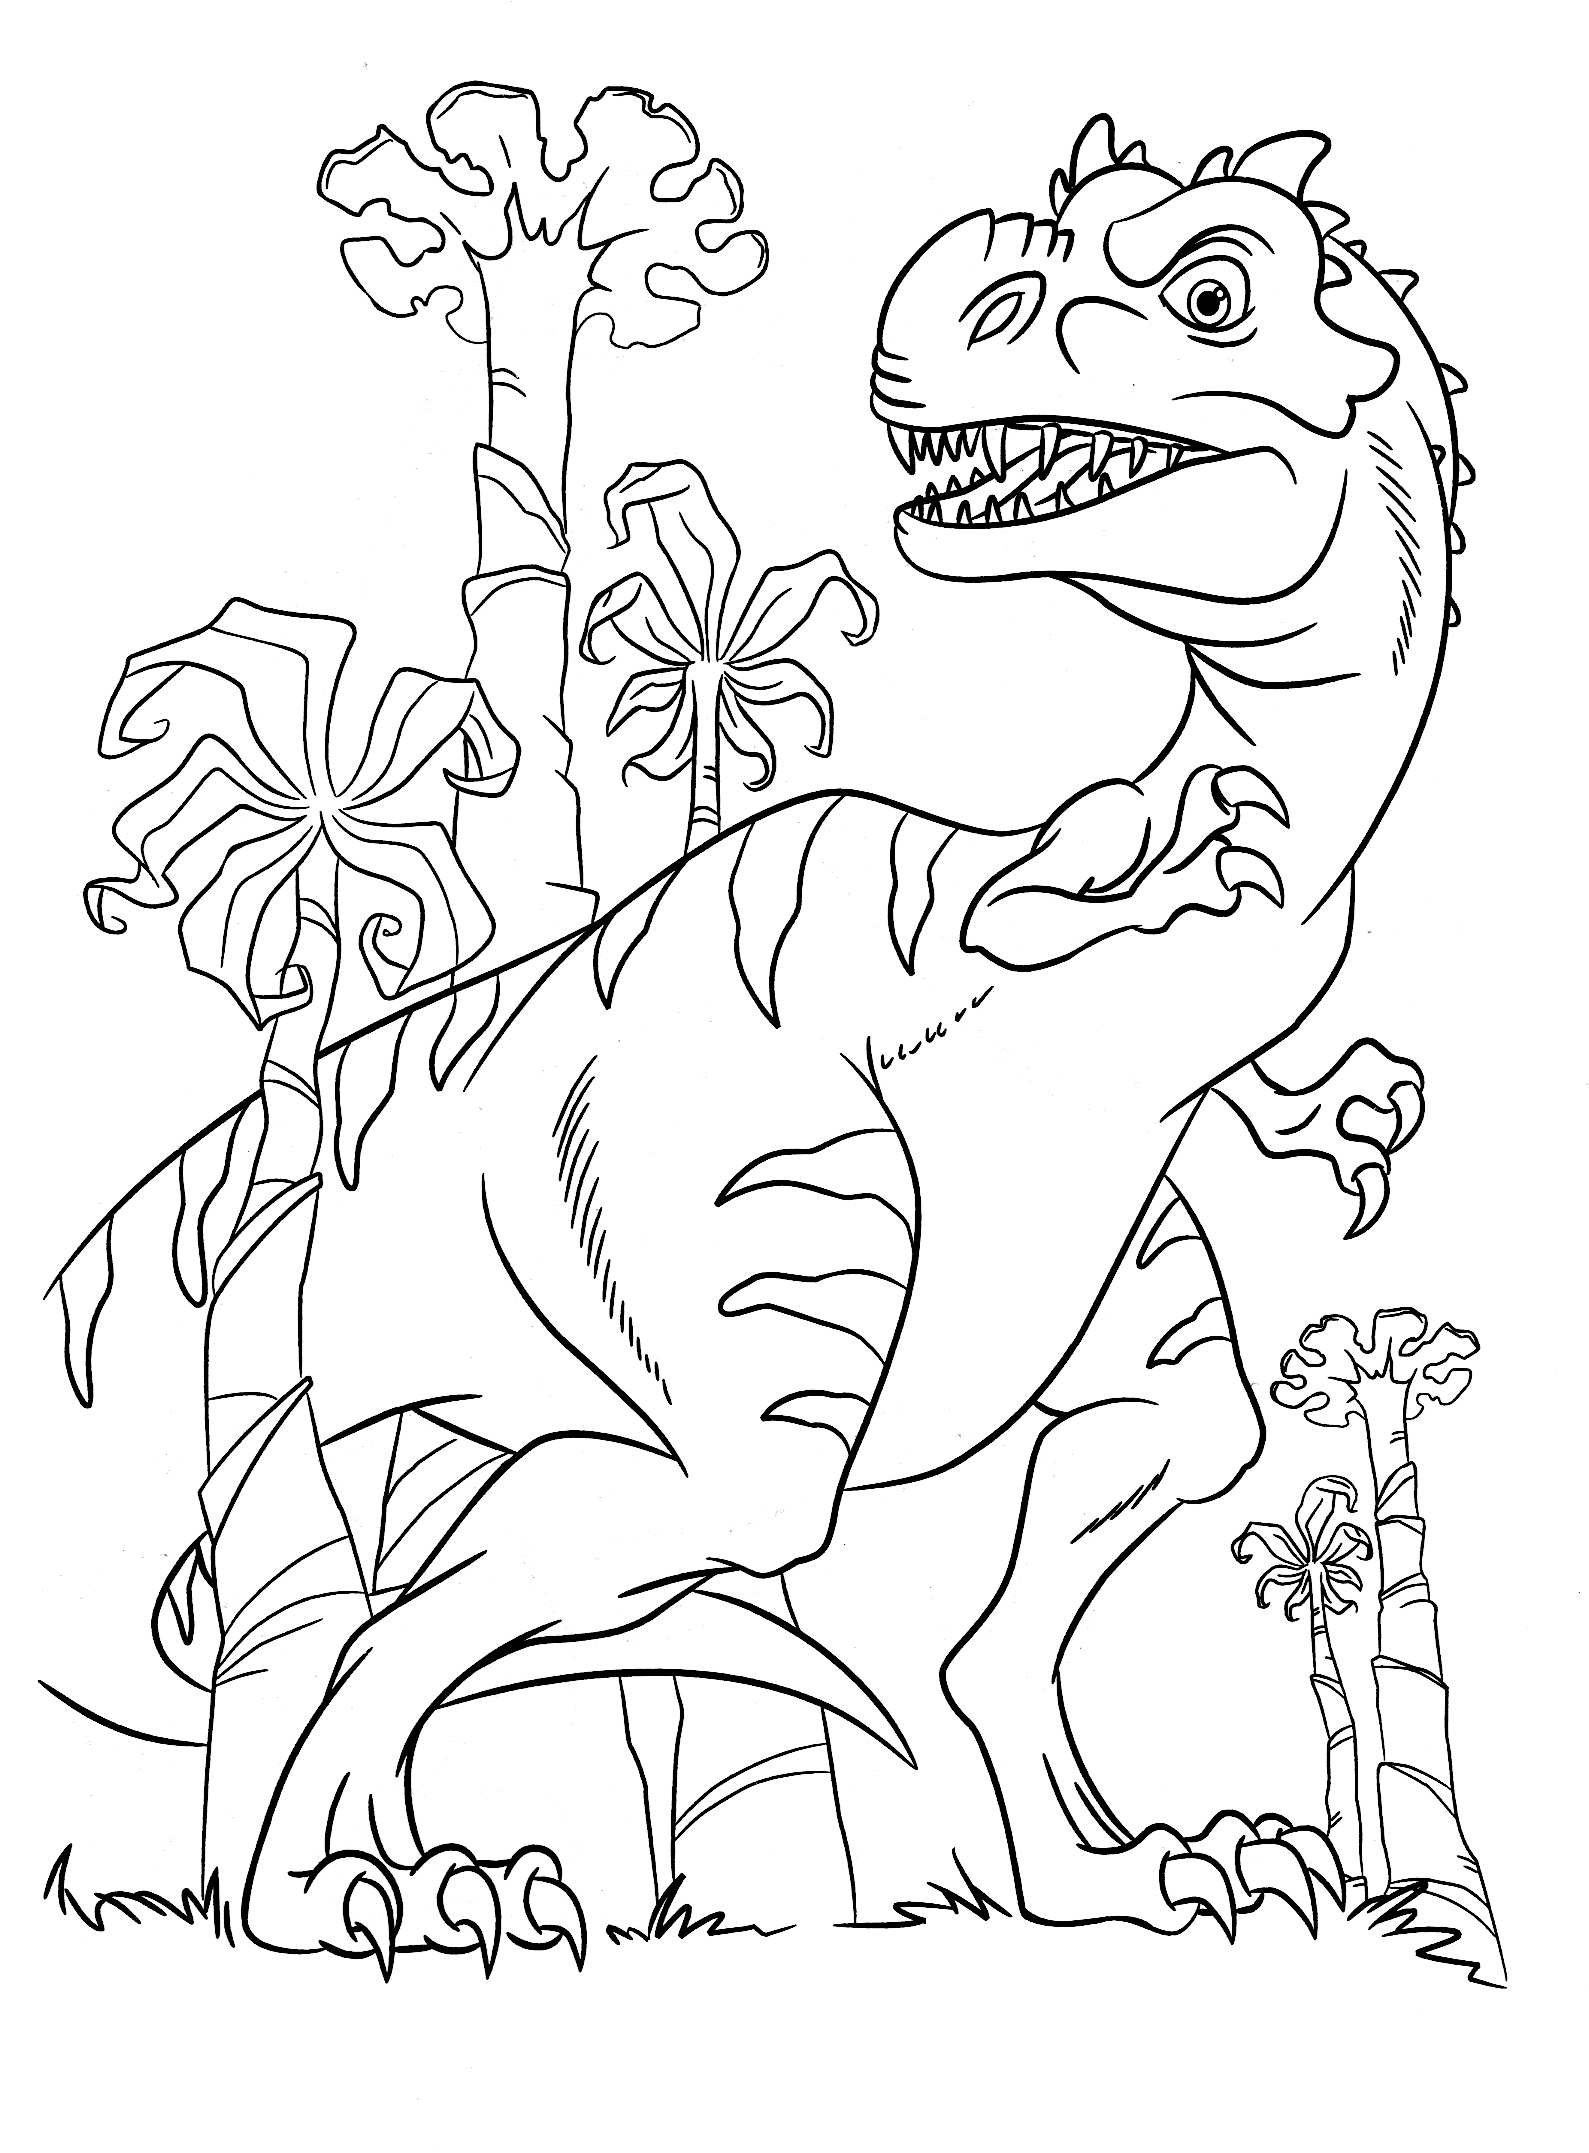 Скачать и распечатать раскраску про динозавра